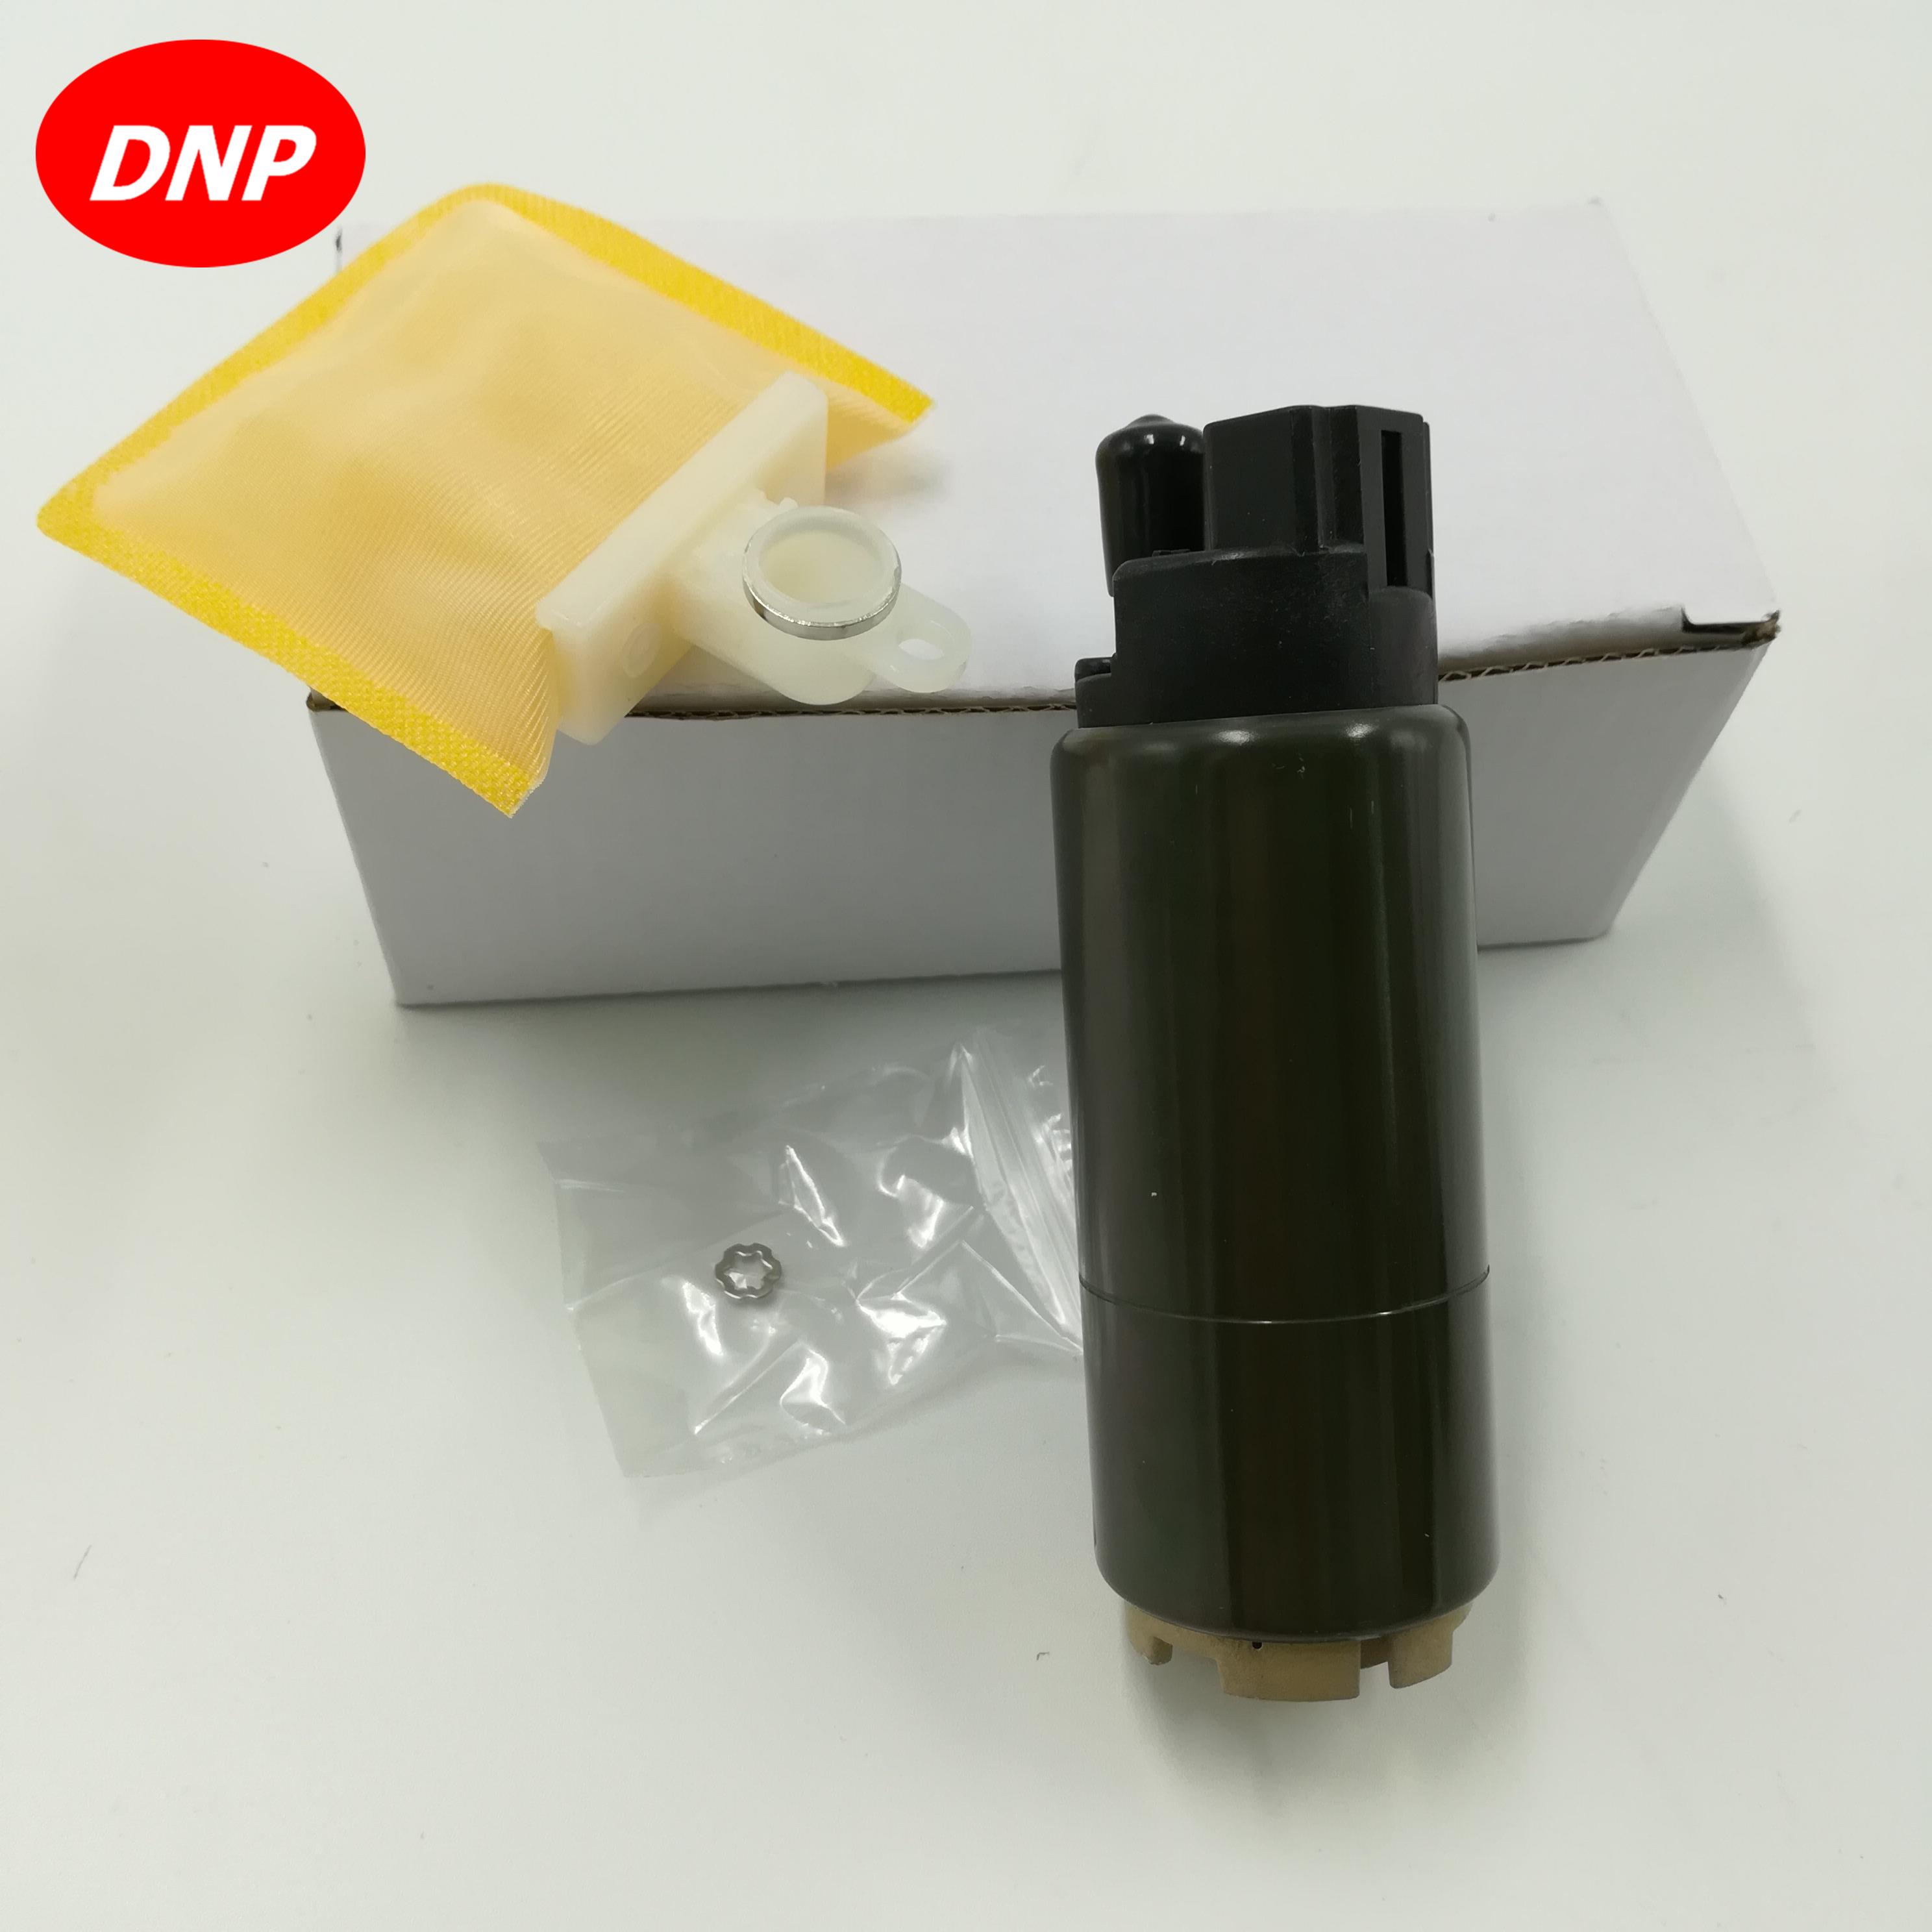 Изображение товара: DNP топливный насос, универсальный, подходит для MITSUBISHI Pajero Montero V73 6G72 MR993340